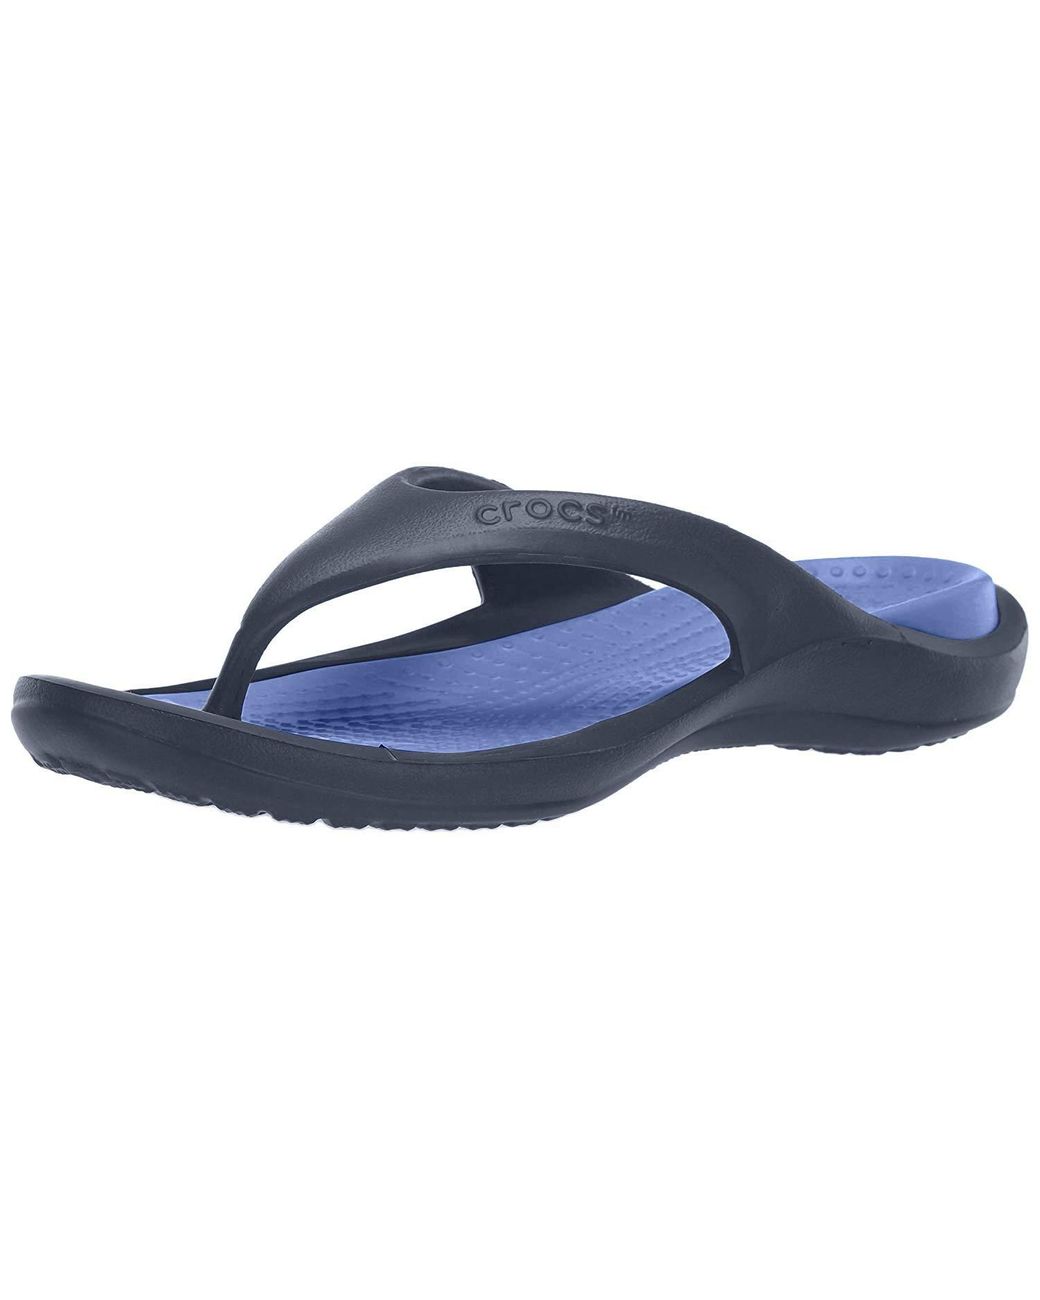 Crocs™ Athens Flip-flop Navy/cerulean Blue 2 Us / 4 Us M Us | Lyst